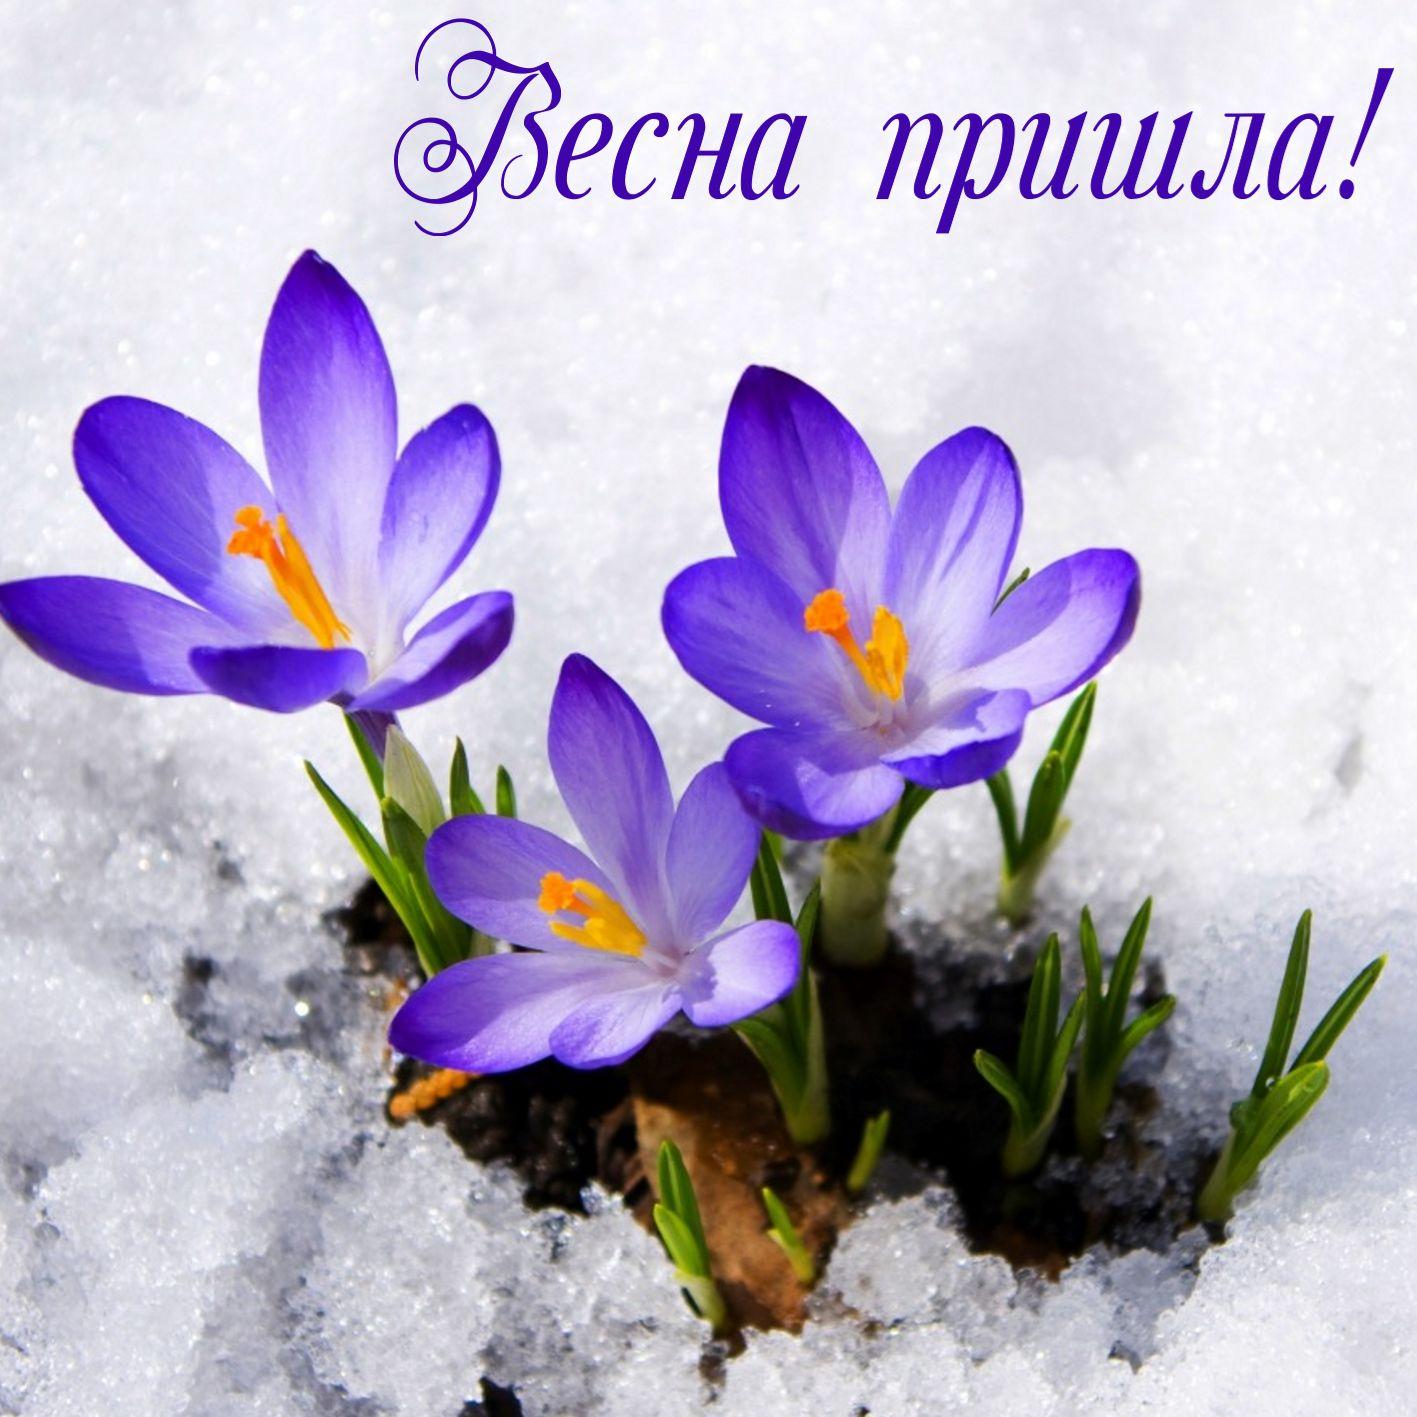 С первым днем весны! | Поздравляю с началом весны! У зимы уж… | Flickr